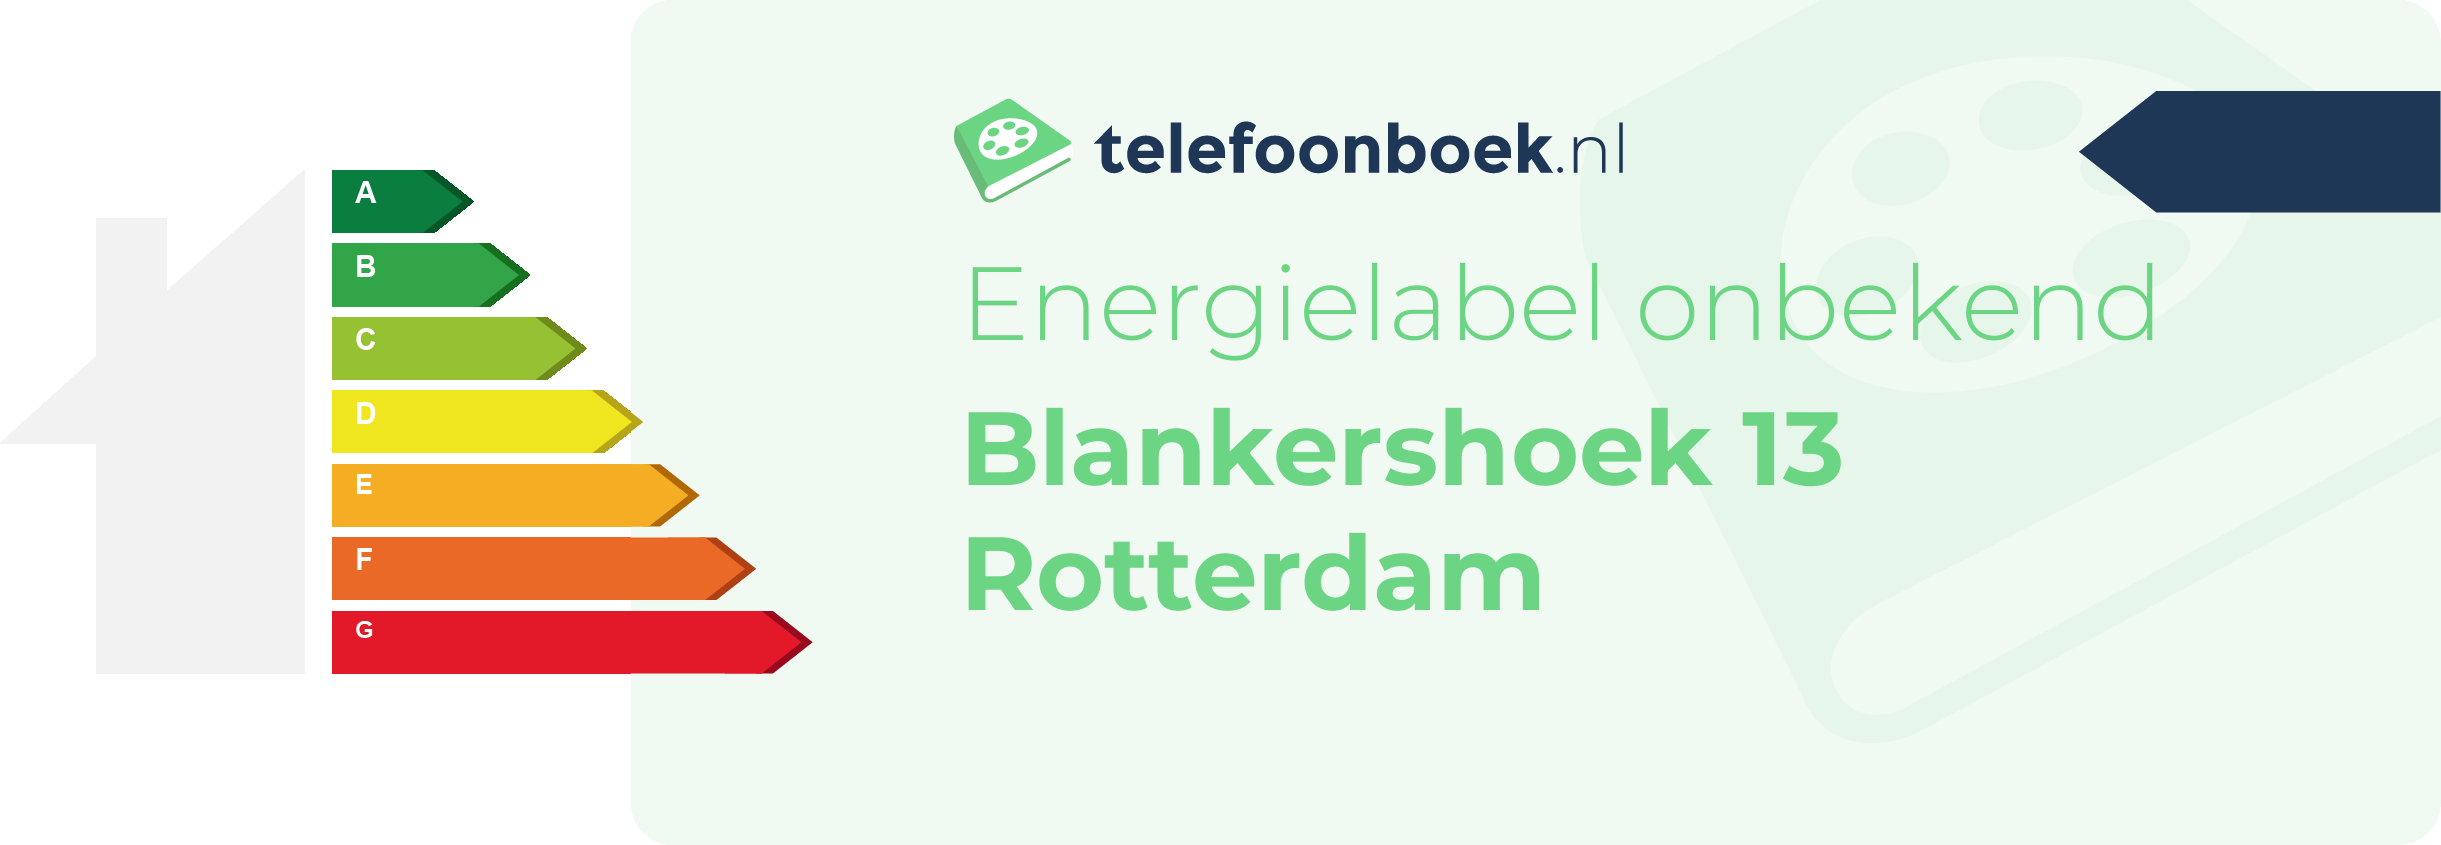 Energielabel Blankershoek 13 Rotterdam